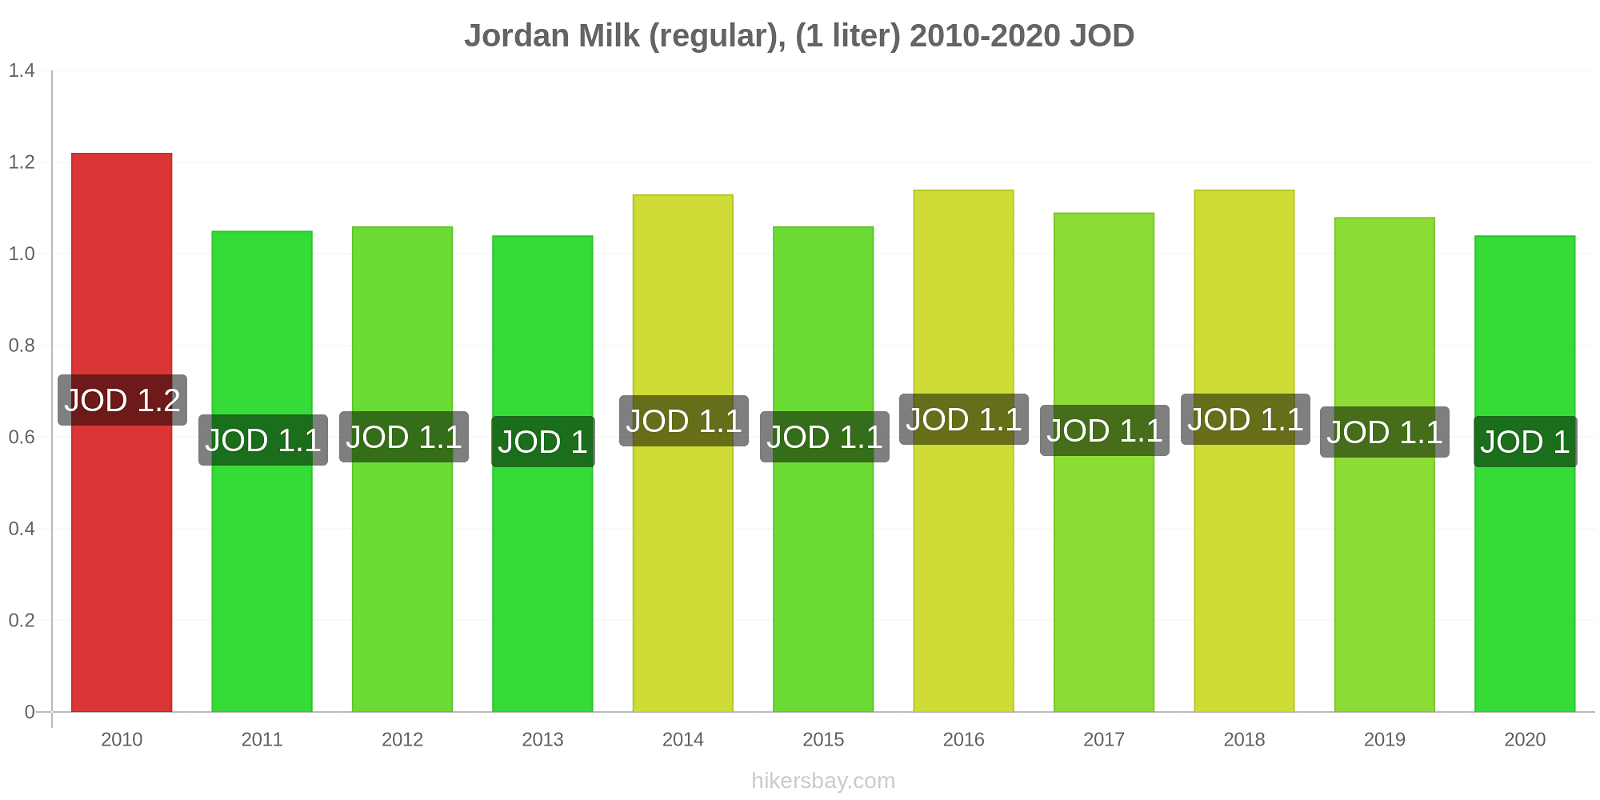 Jordan price changes Milk (regular), (1 liter) hikersbay.com